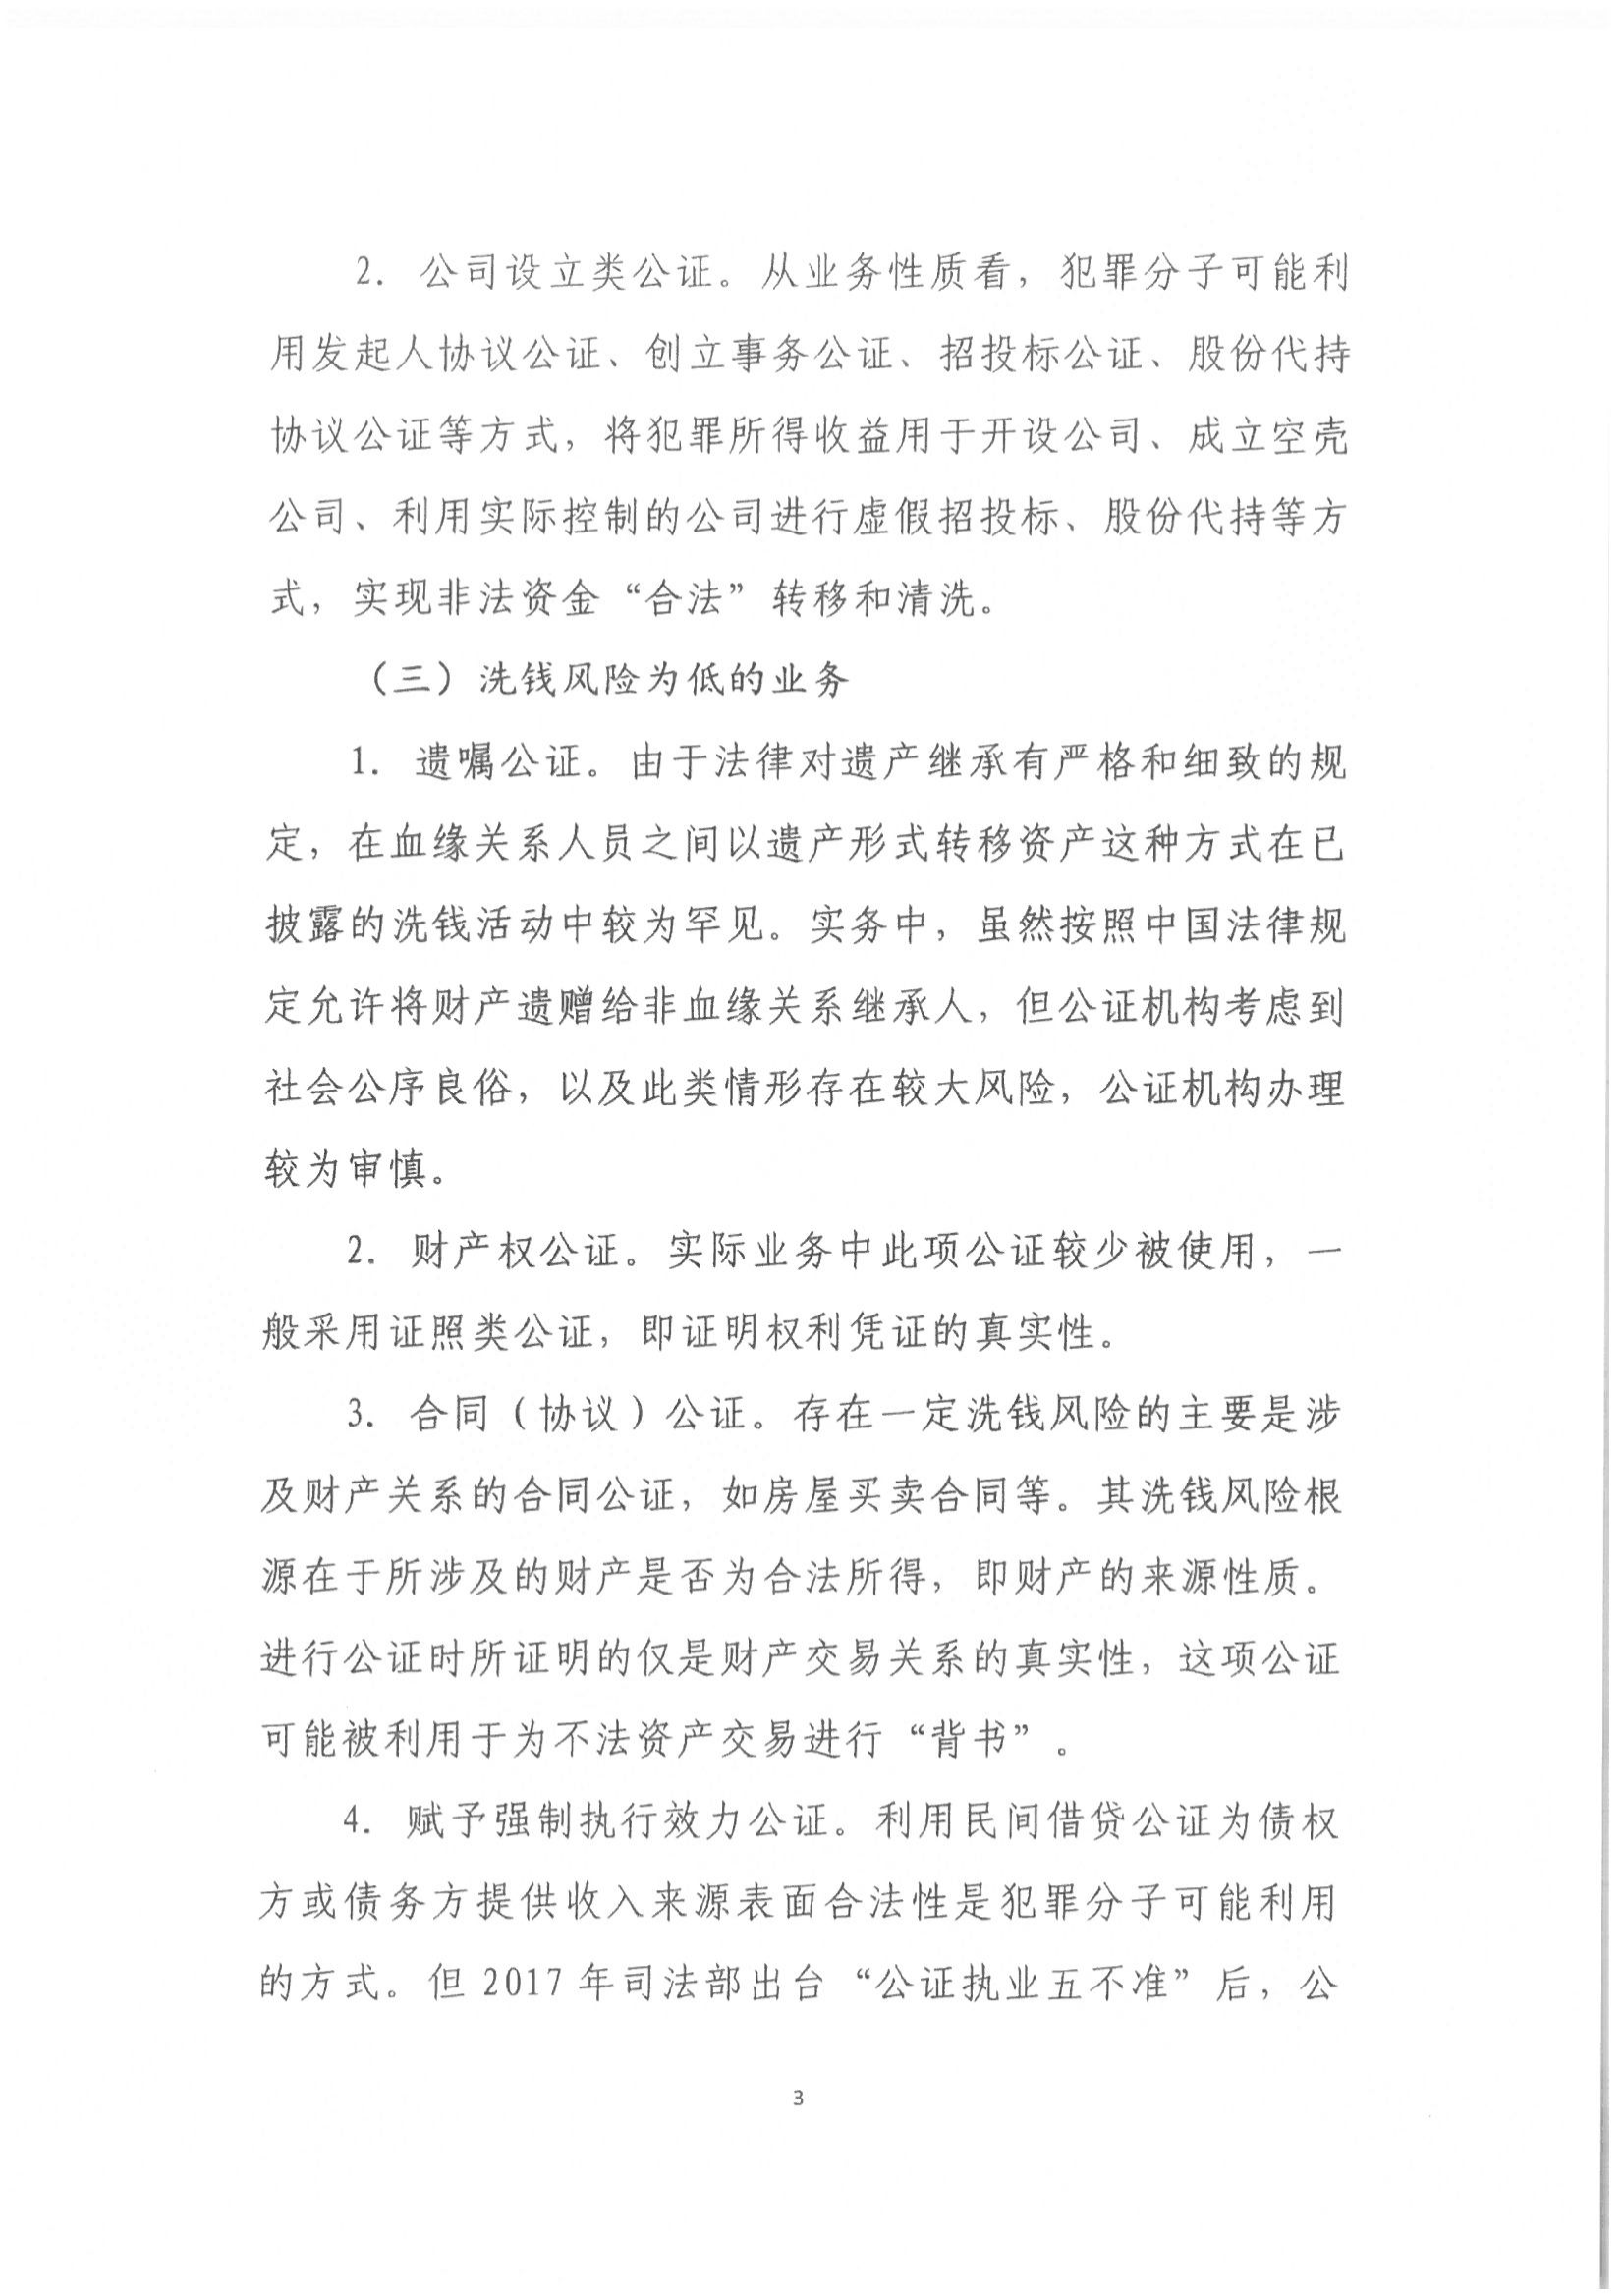 京公协字【2021】1号 关于中国公证行业洗钱和恐怖融资风险评估情况的通报_04